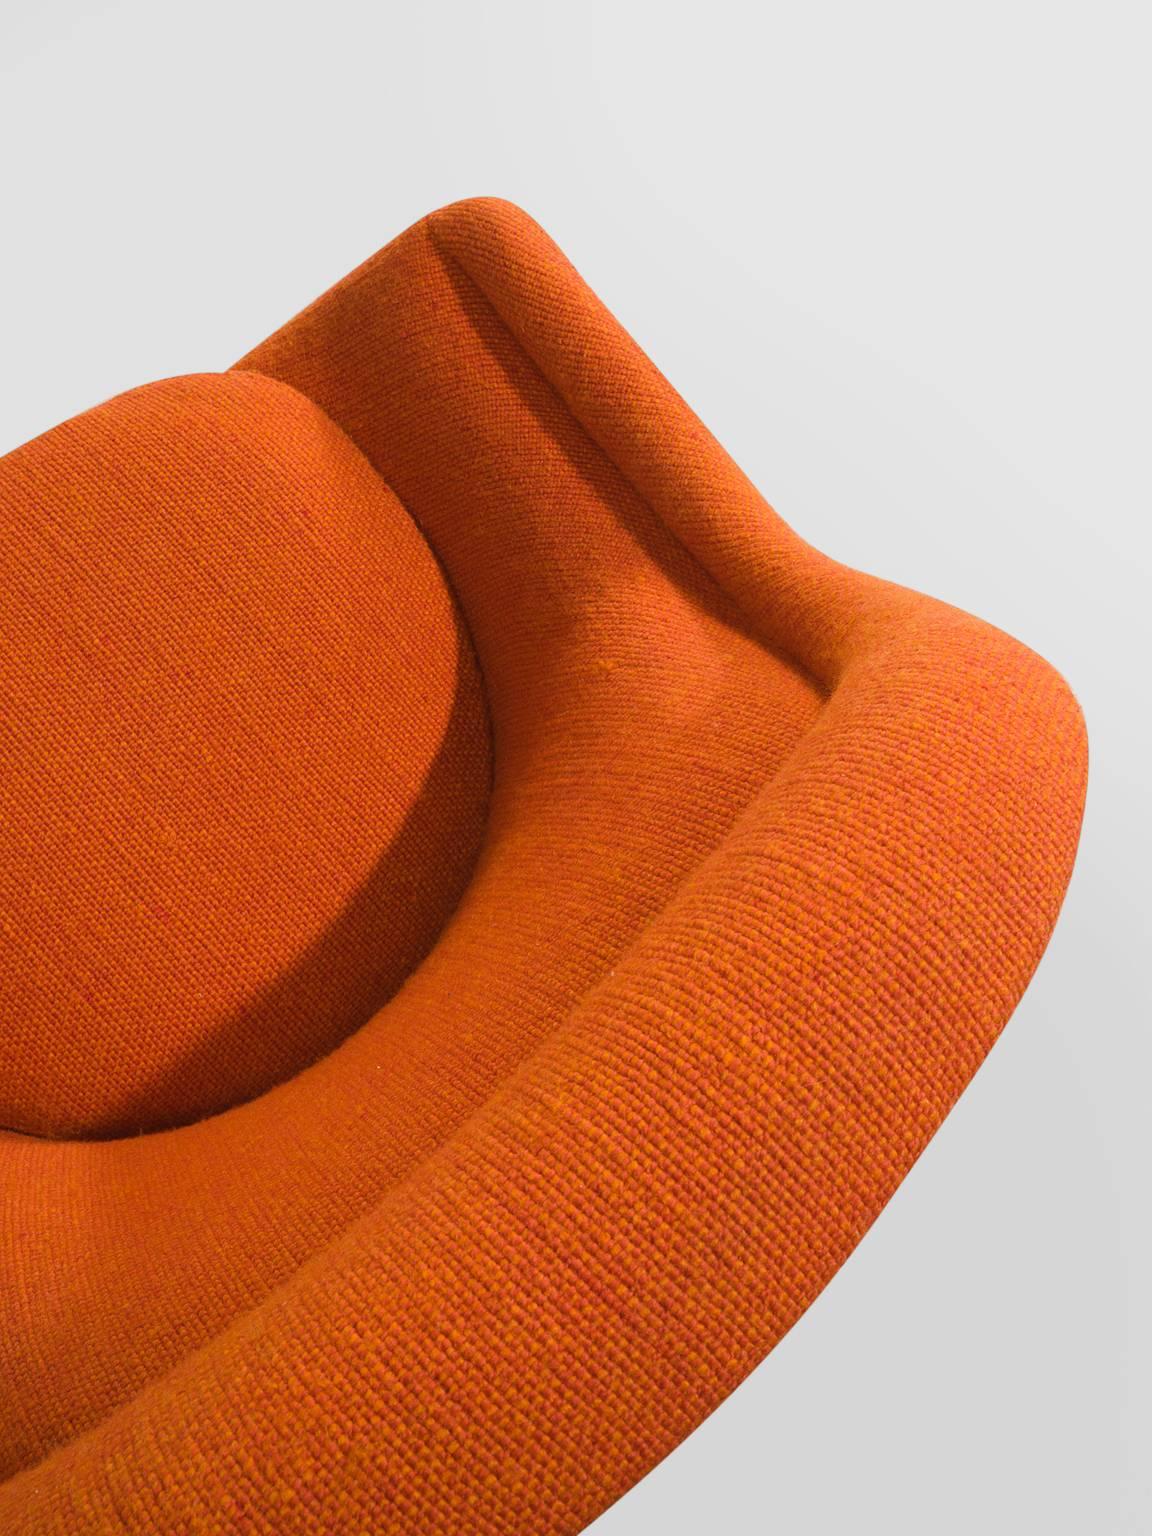 Warren Platner Easy Chair in Original Orange Fabric 2